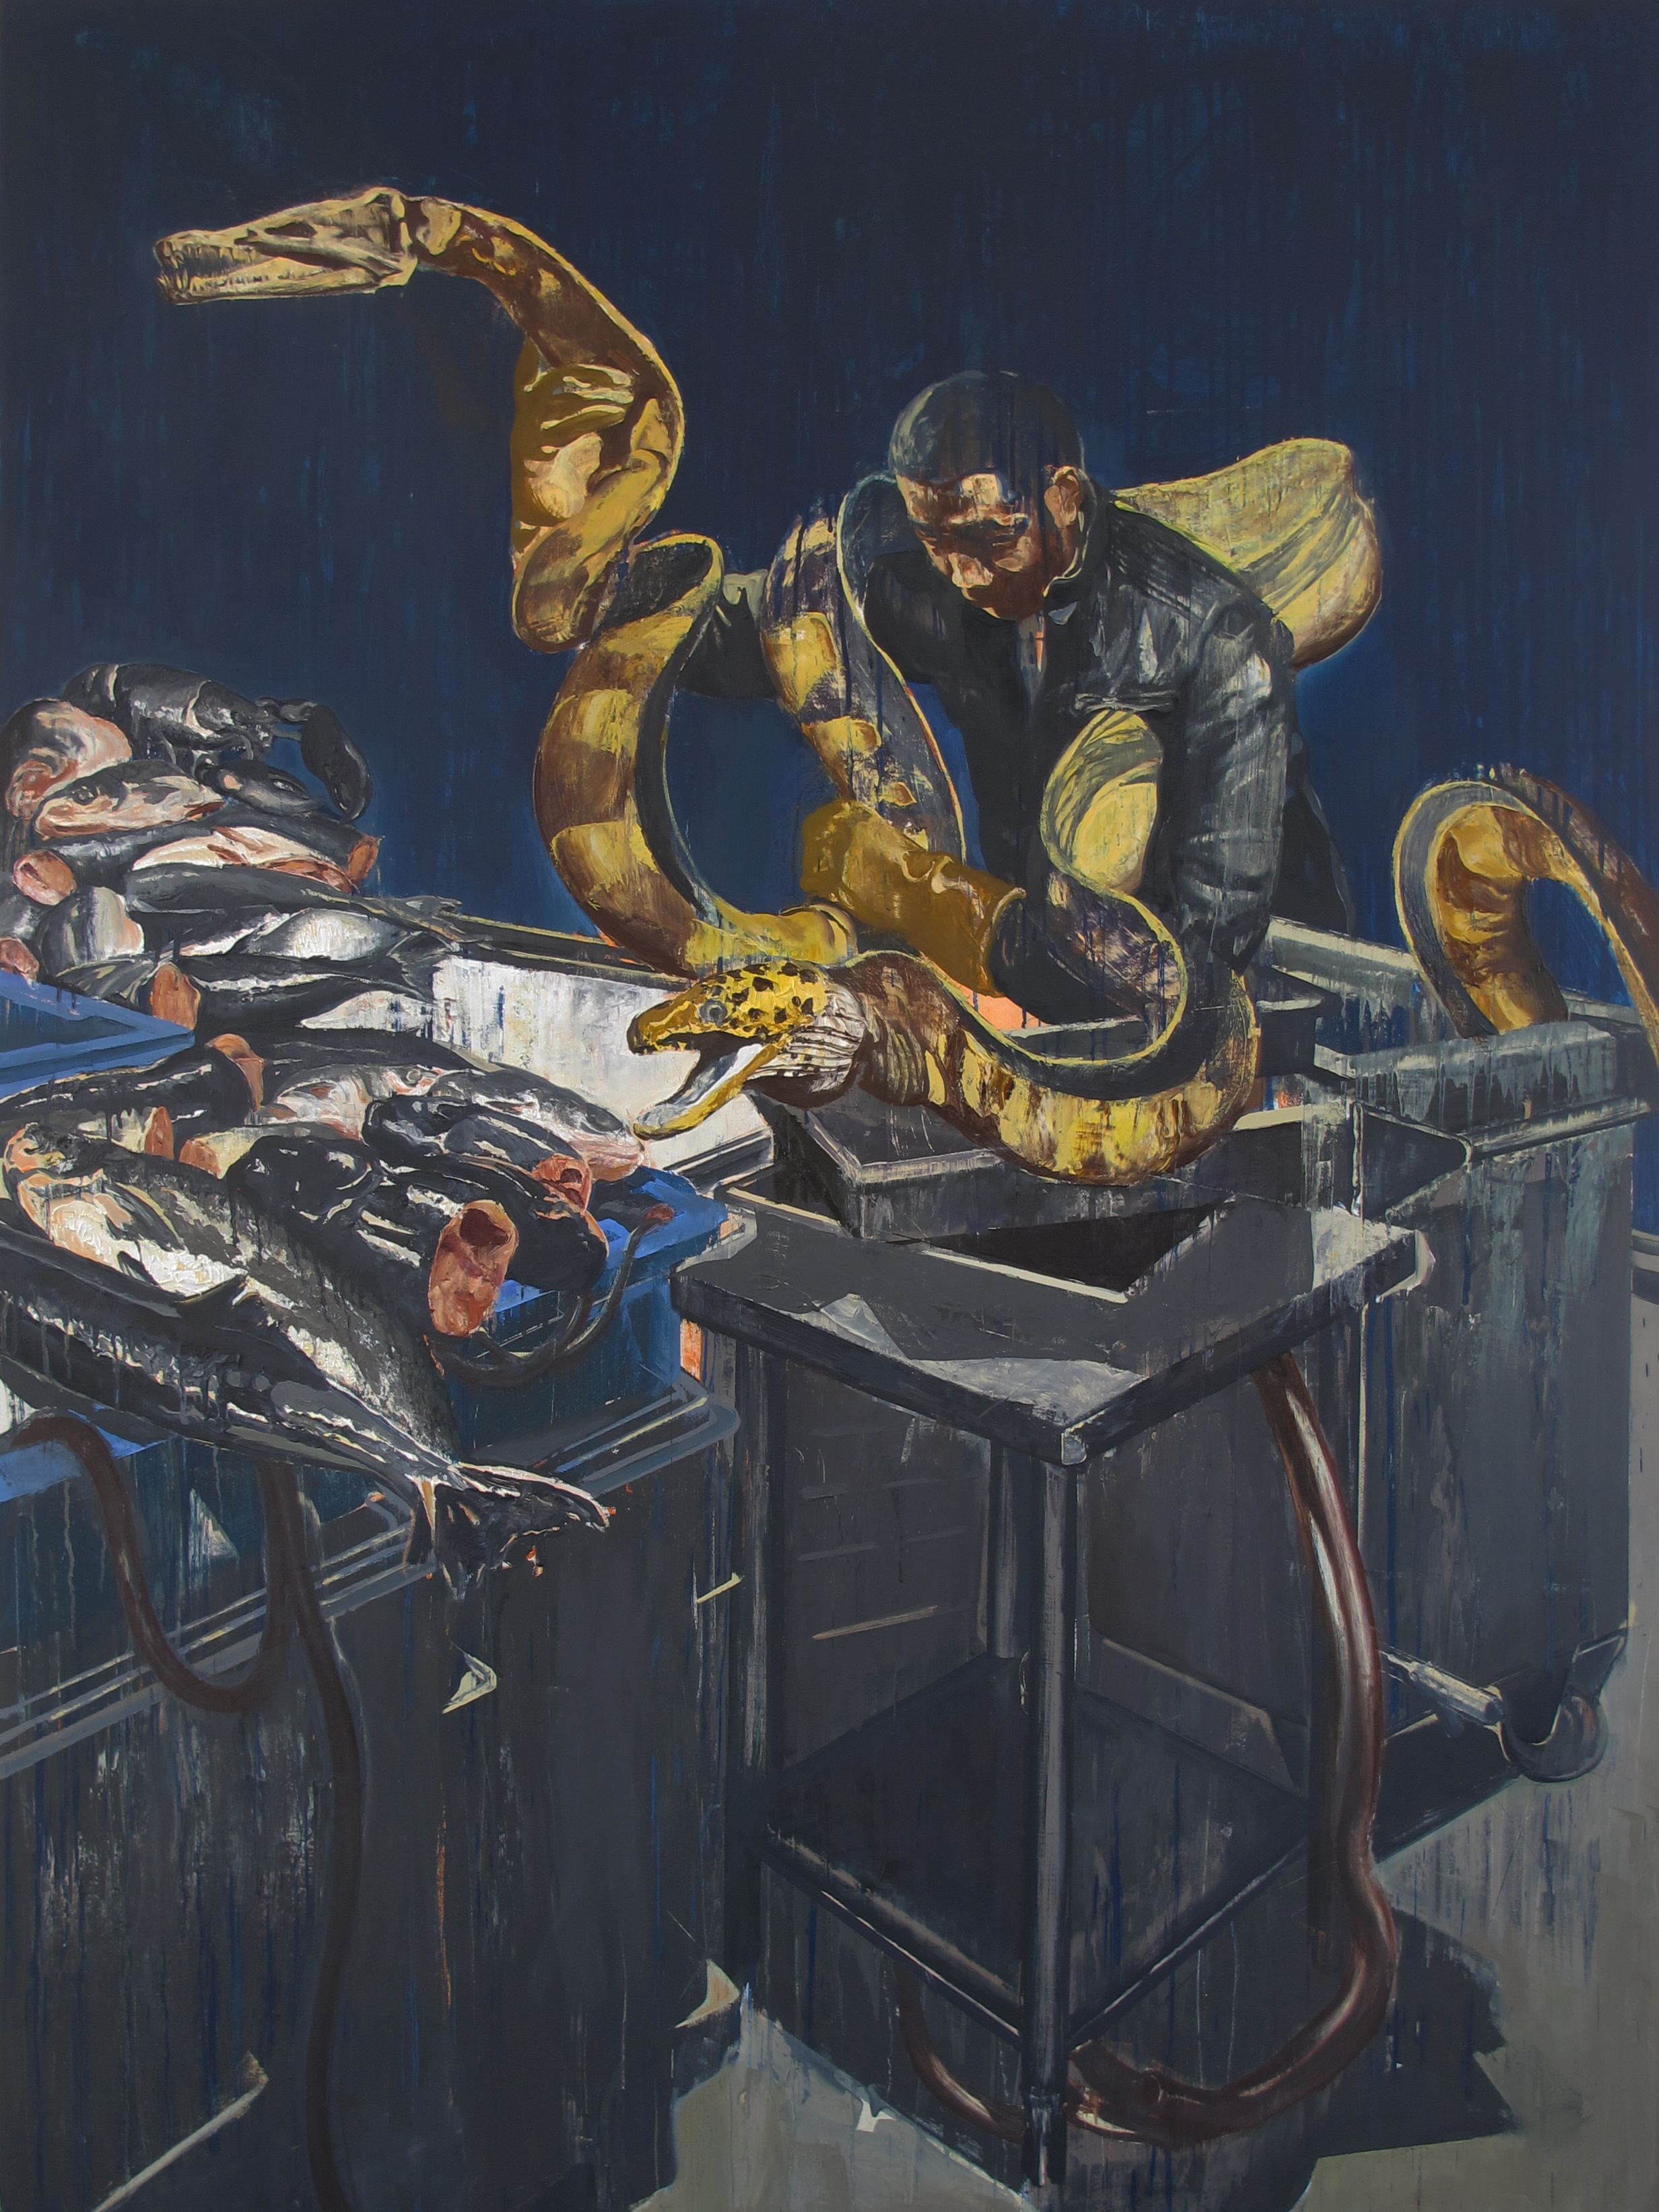 龚辰宇Gong Chenyu 陈列物—鳗鱼 Display-eel 2016 布面油画 Oil on canvas 200×150cm 